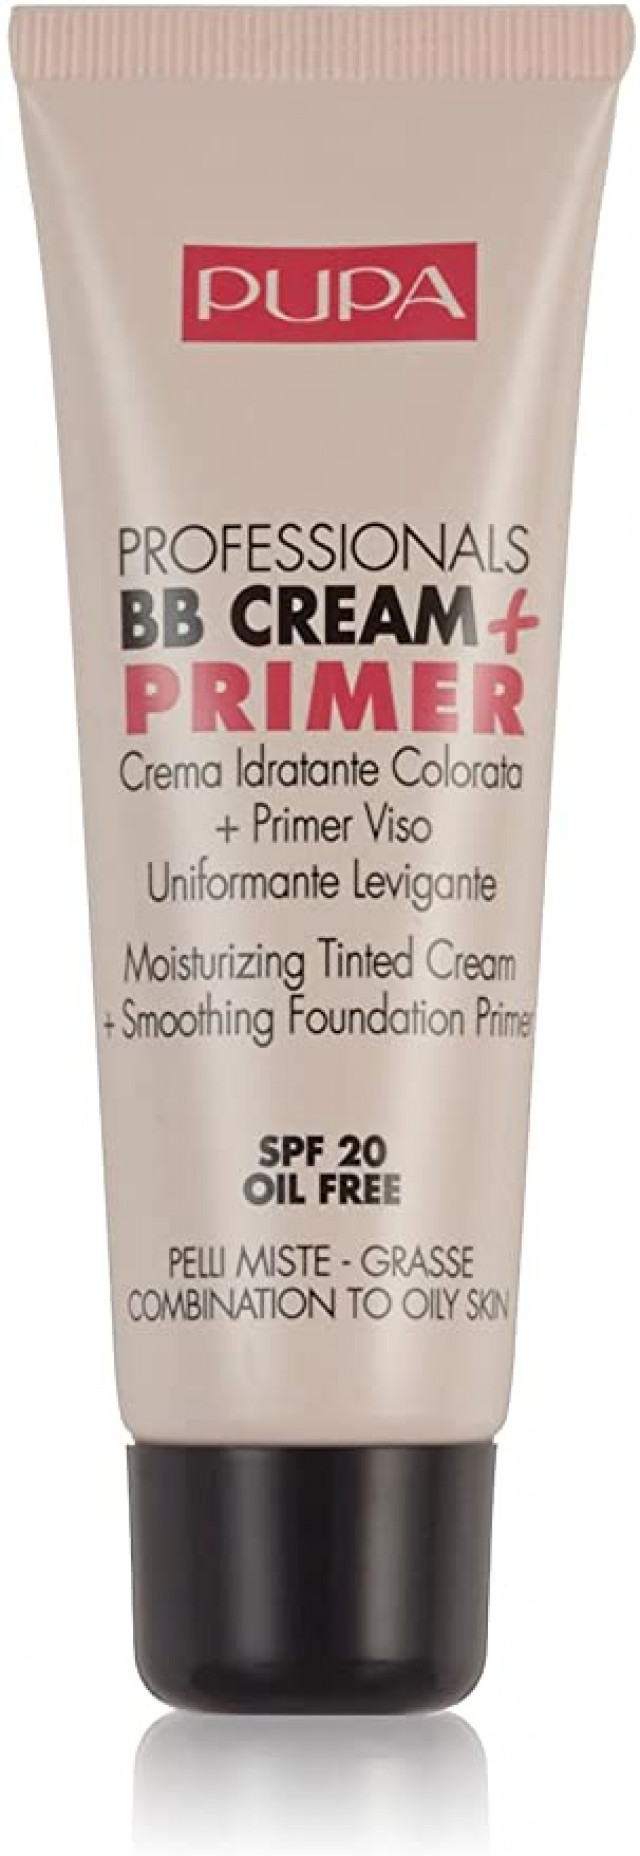 Professionals bb cream + primer